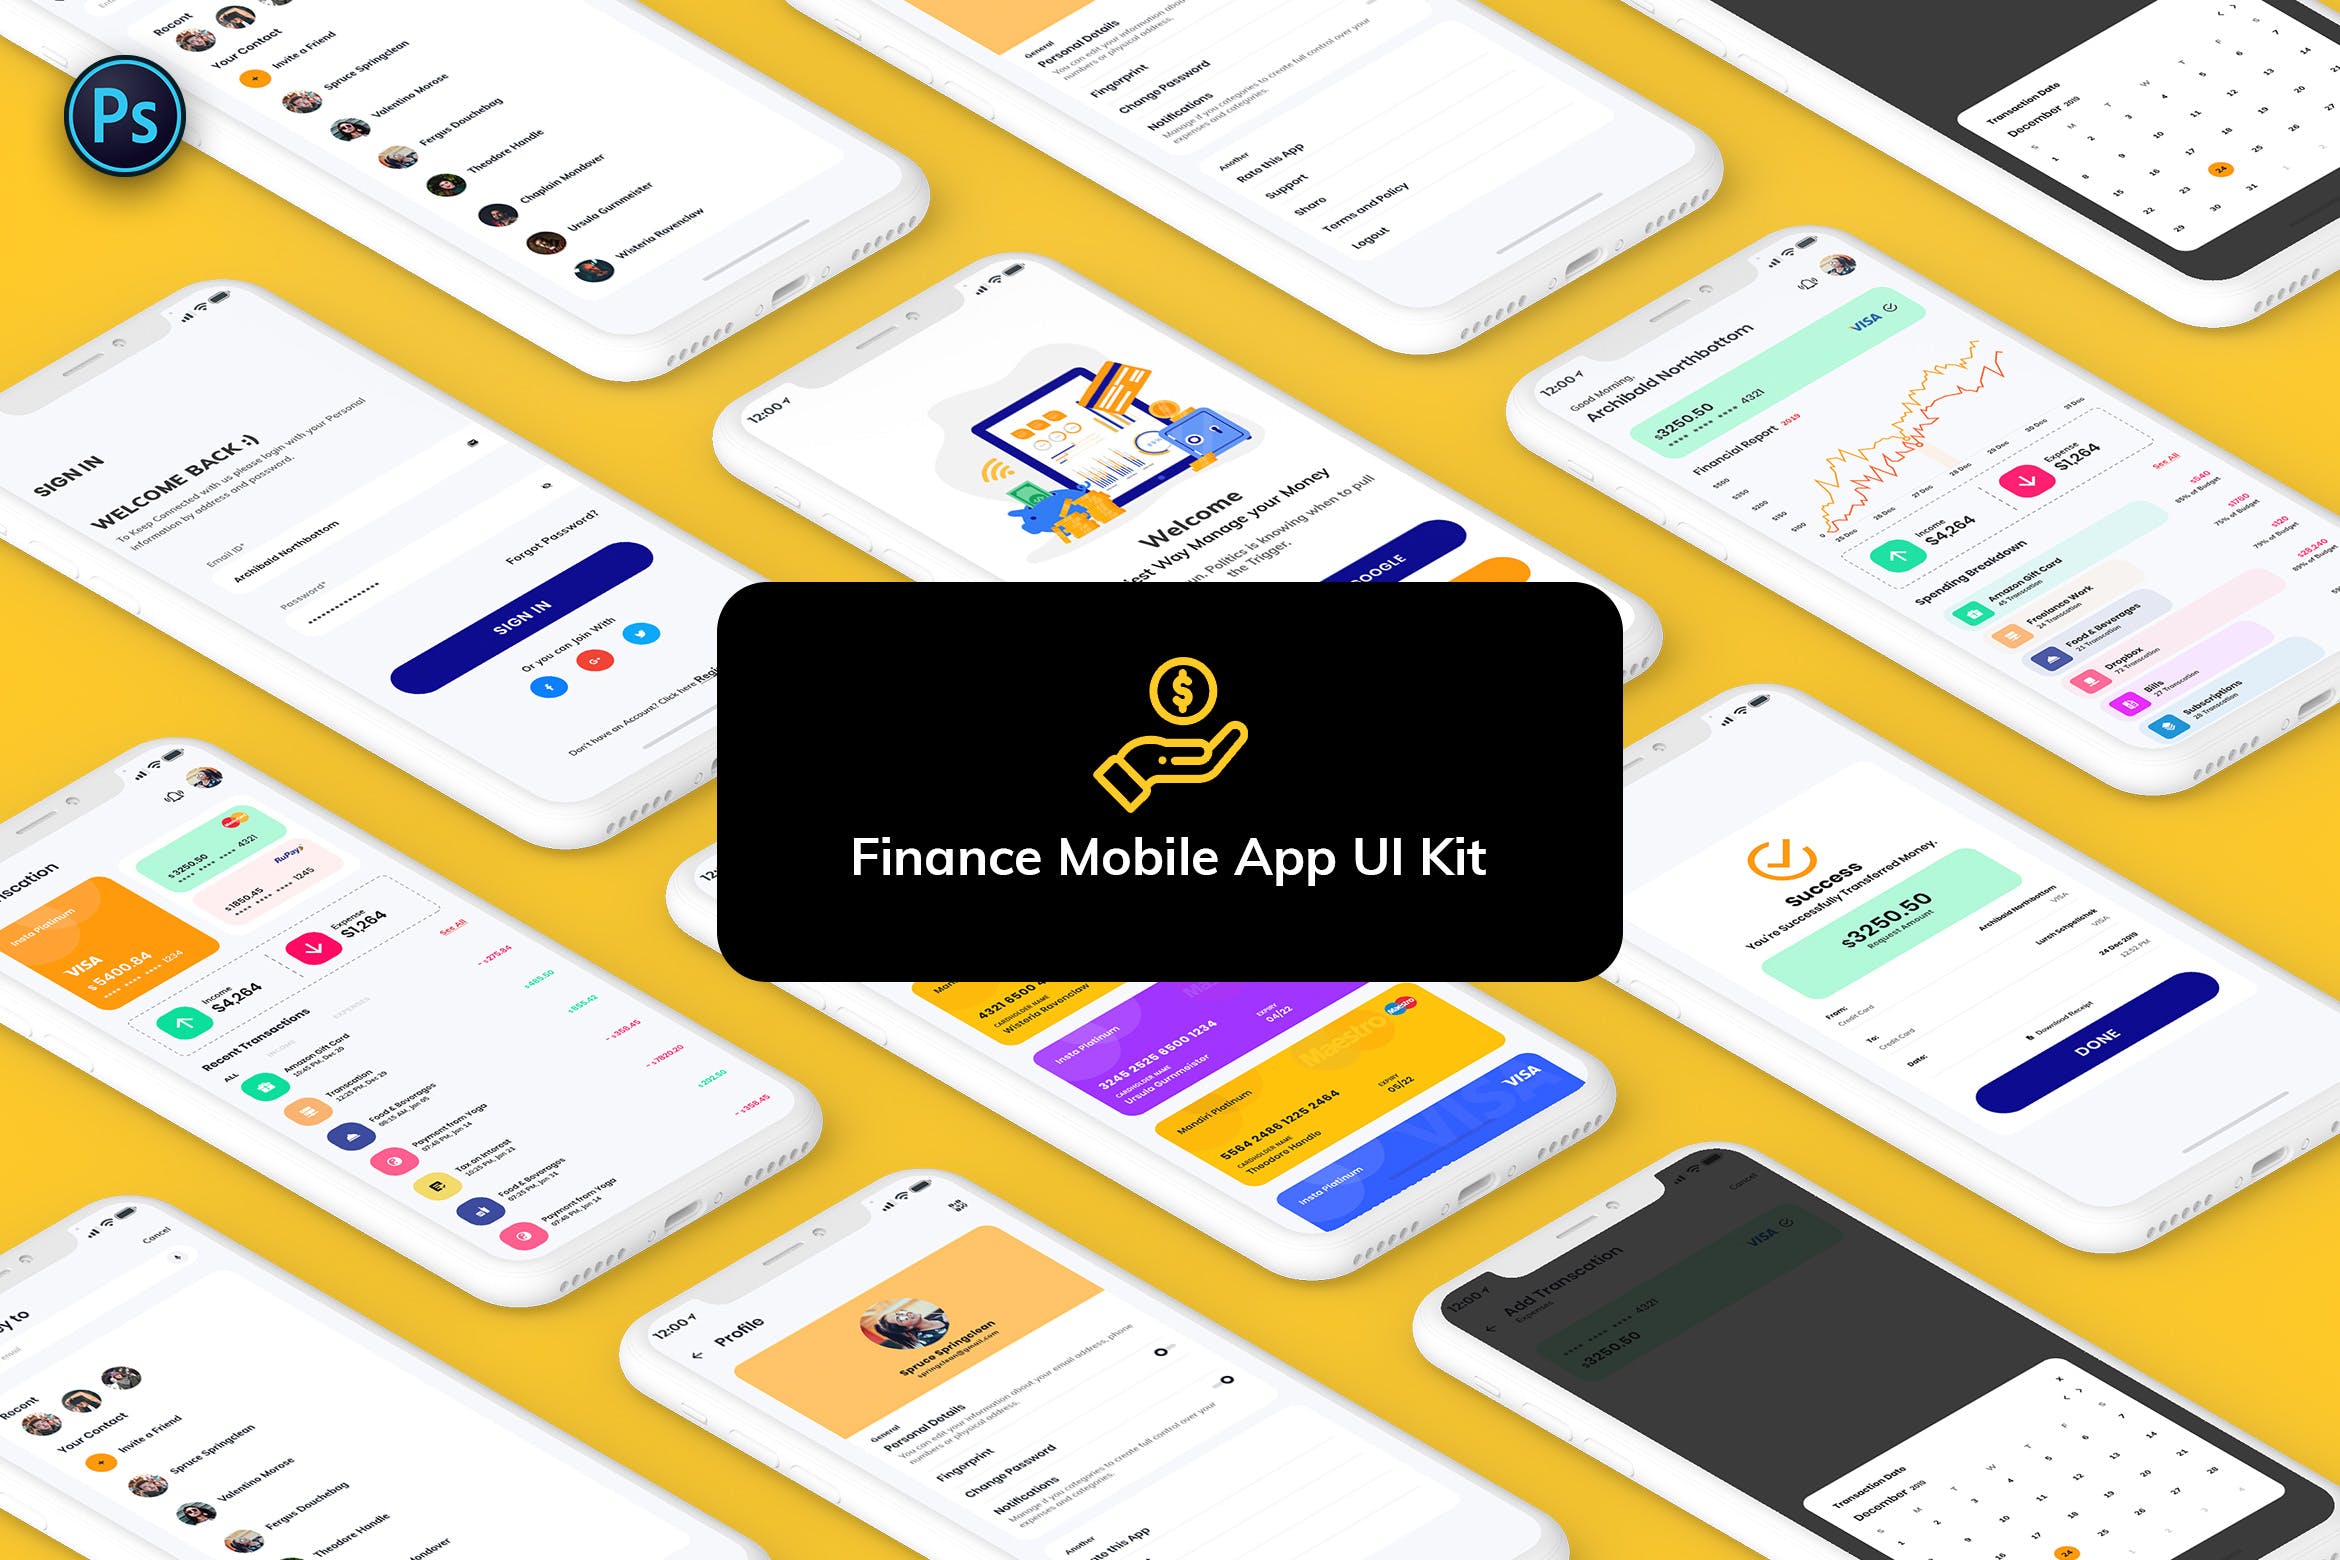 金融网上交易APP应用UI界面设计非凡图库精选模板 Finance Mobile App Template UI Kit Light Version插图